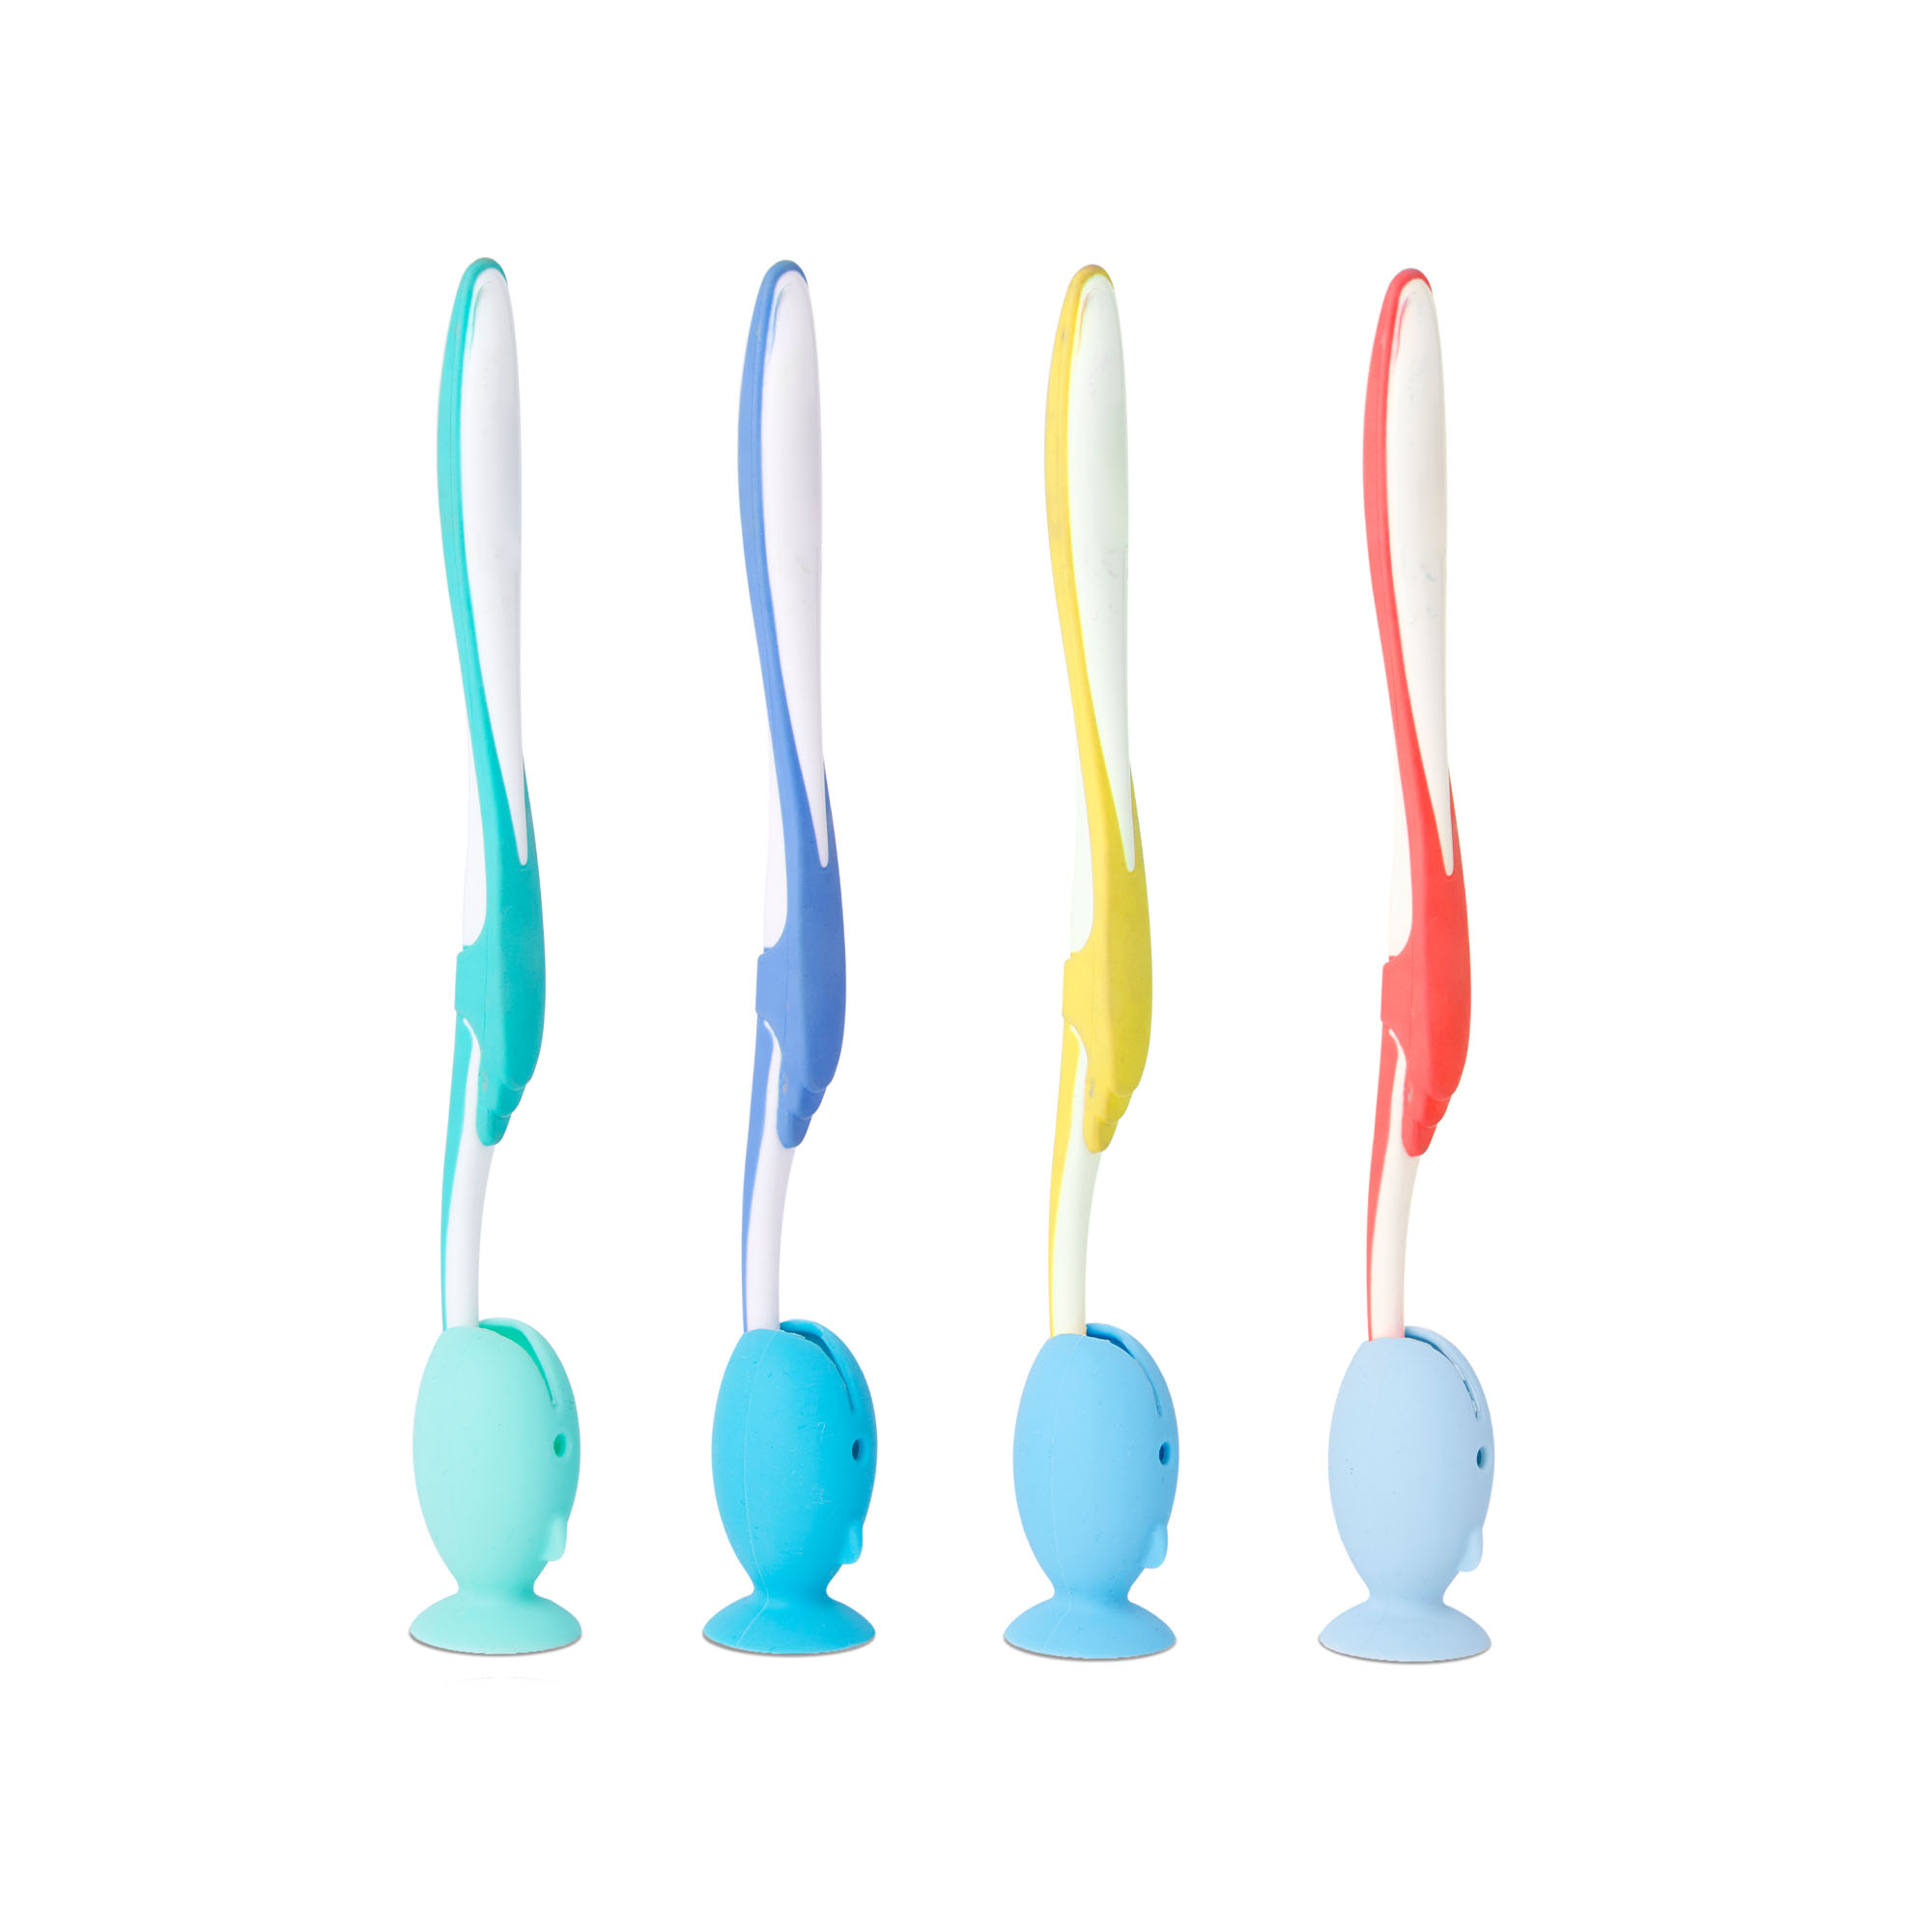 Protezione in silicone per spazzolino da denti - Set da 4 pz, , large